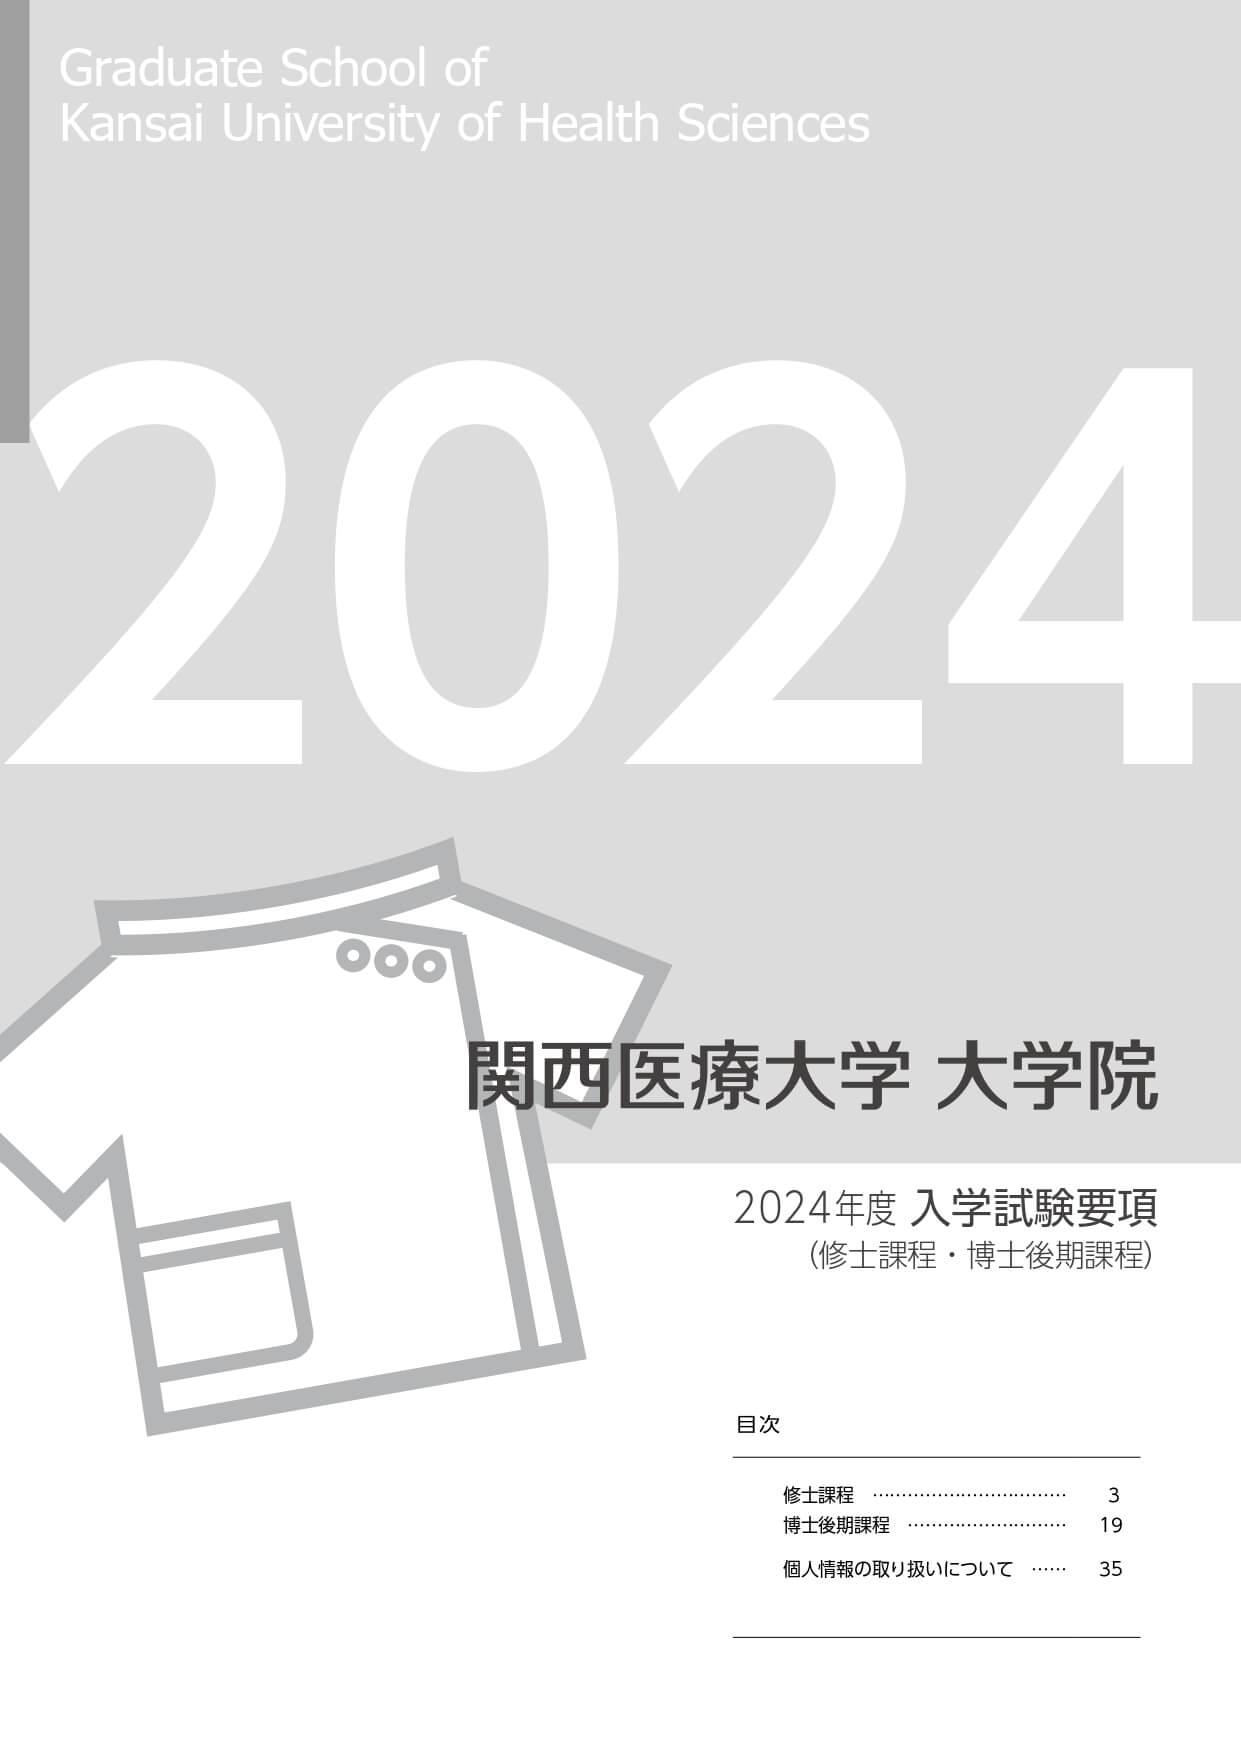 関西医療大学大学院2024年度入学試験要項